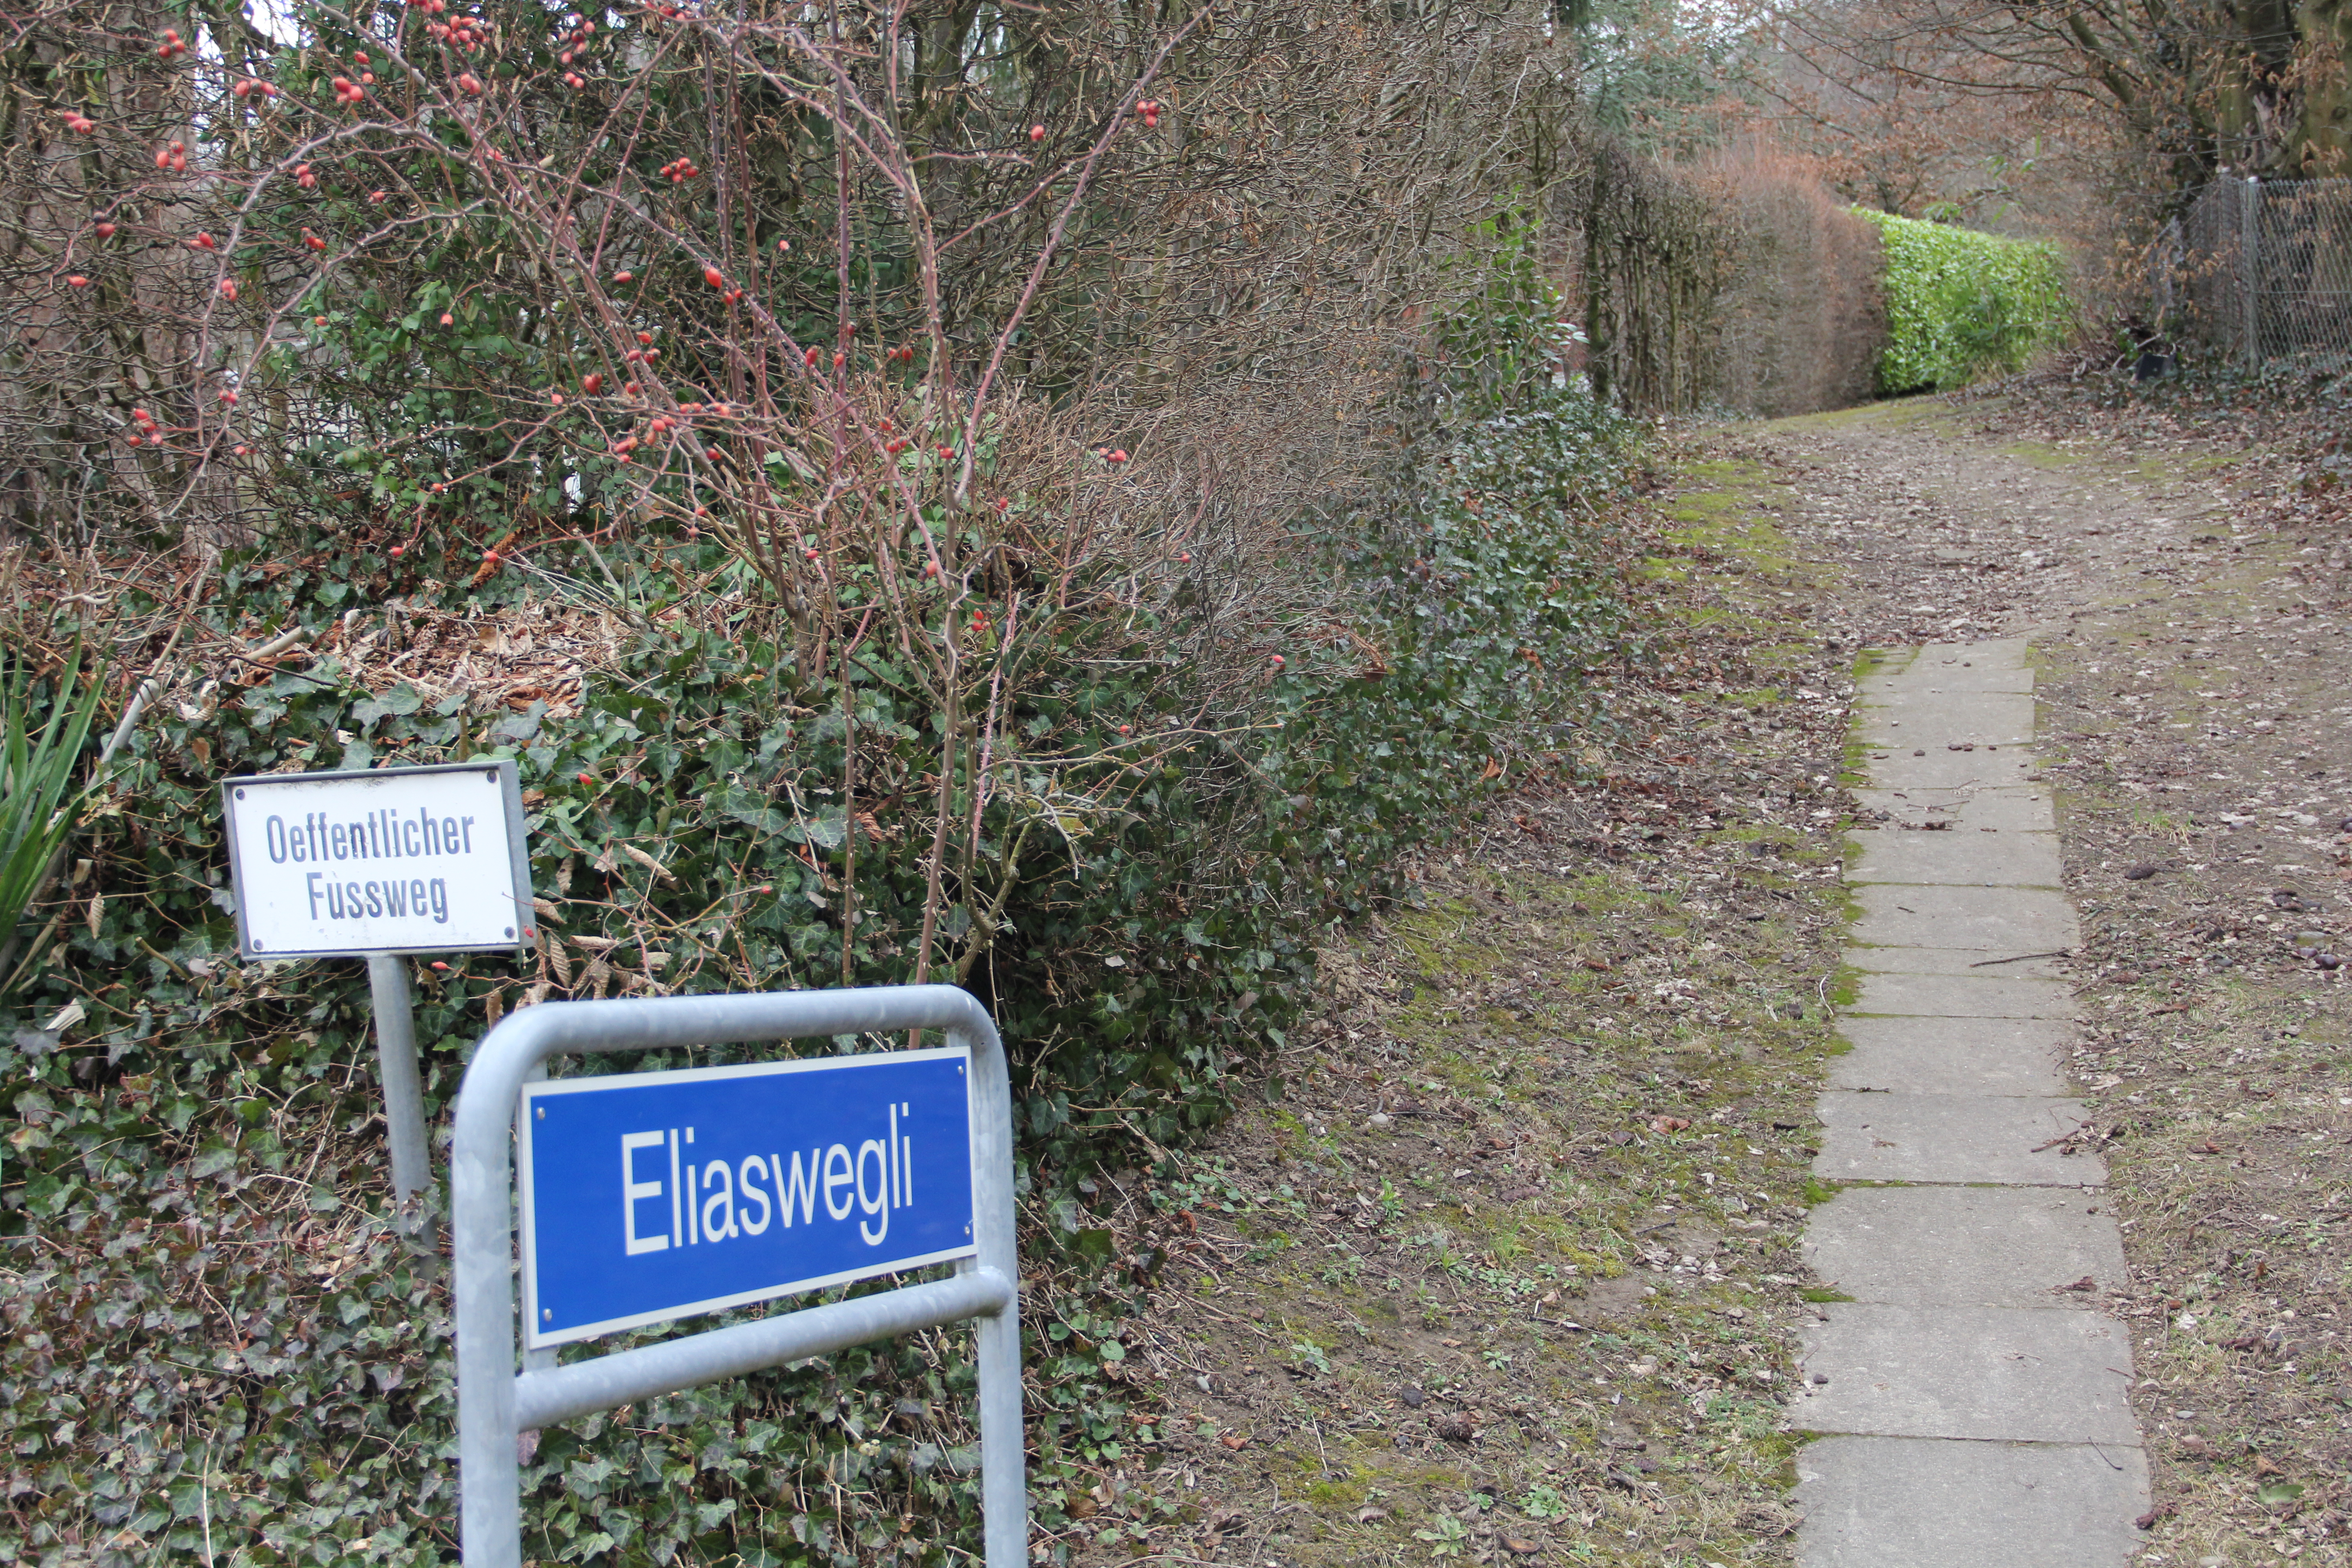 Lange Zeit ein unbenannter Schleichweg, doch seit wenigen Jahren nach einem Bettinger Politiker benannt: Das Eliaswegli am Riehener Ausserberg.